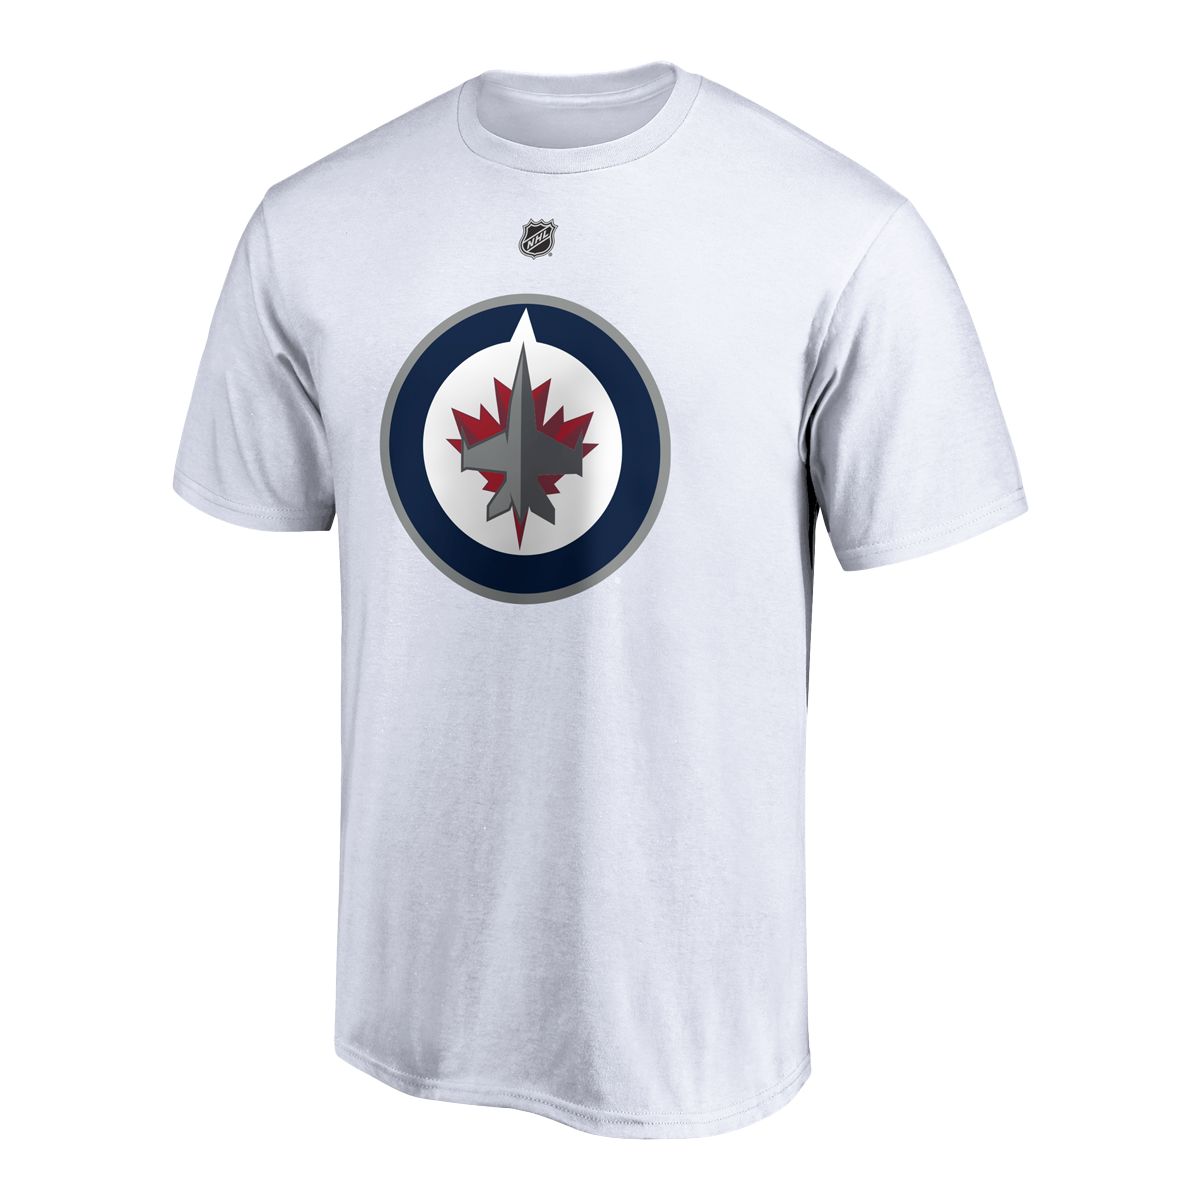 Connor Hellebuyck Shirt, Winnipeg Hockey Men's Cotton T-Shirt